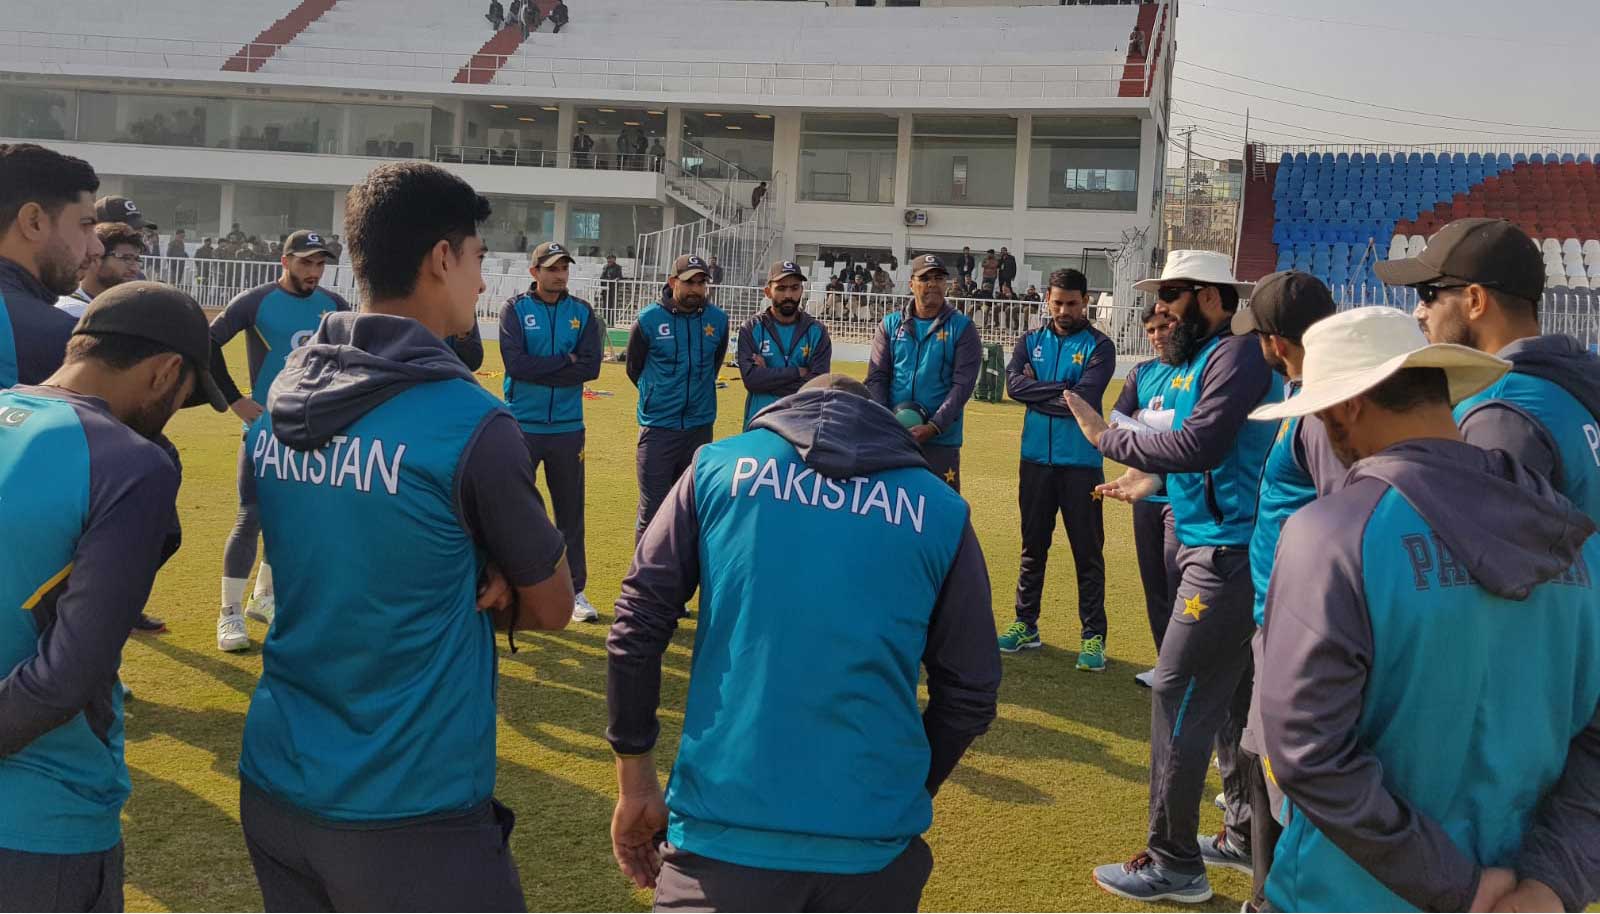 Rain may disrupt first Pakistan-Sri Lanka Test